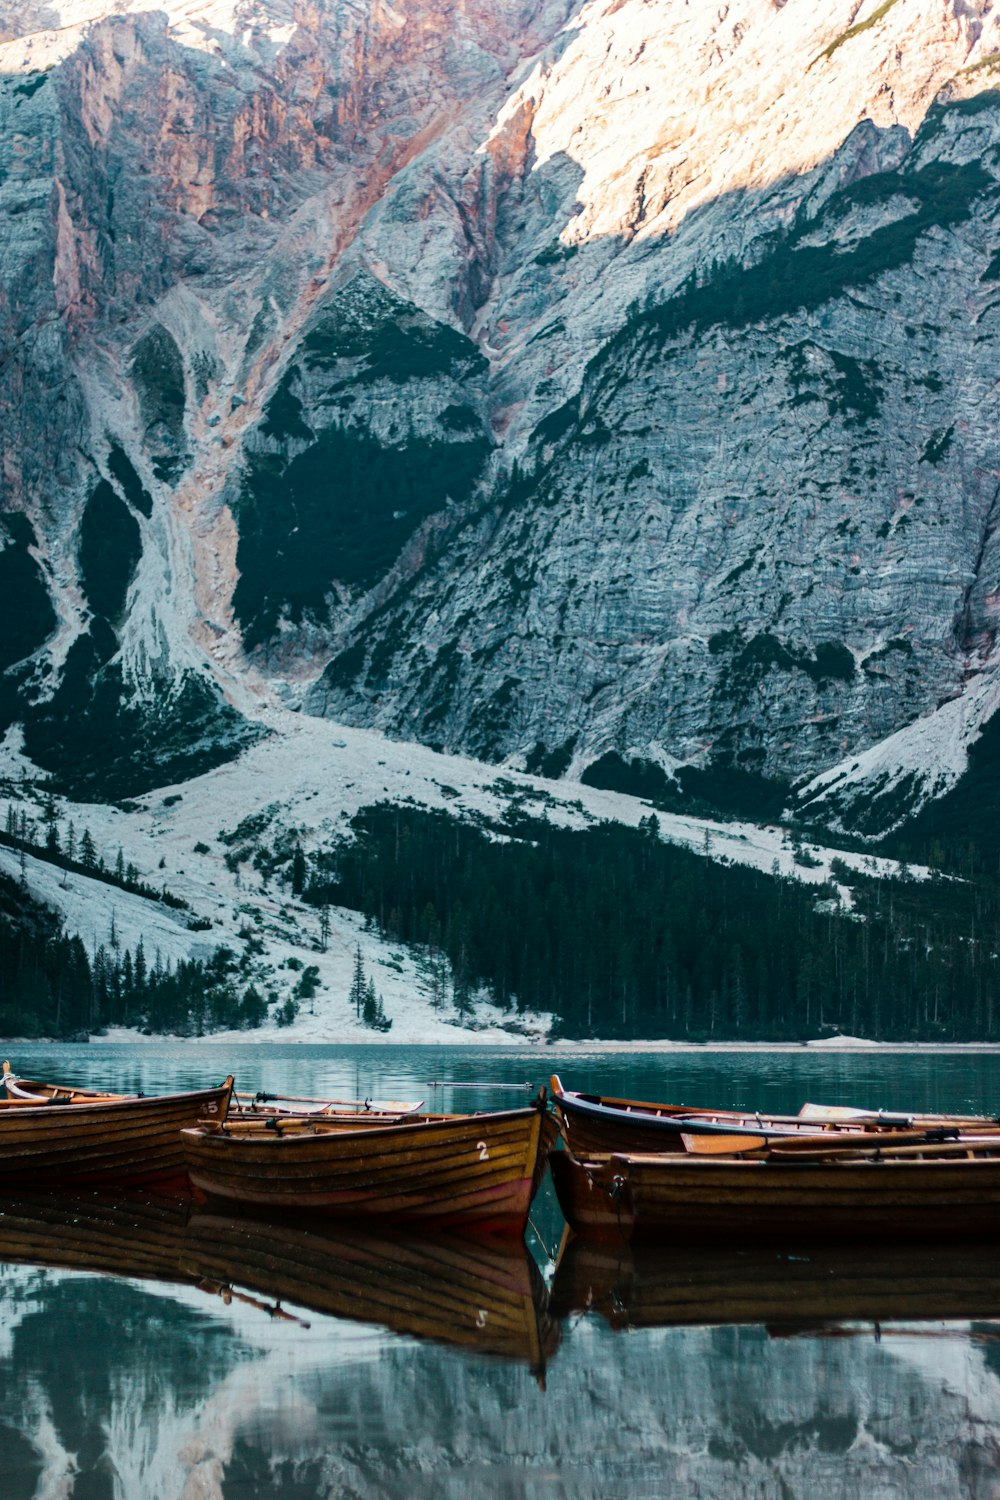 Un groupe de bateaux dans un plan d’eau près d’une montagne rocheuse